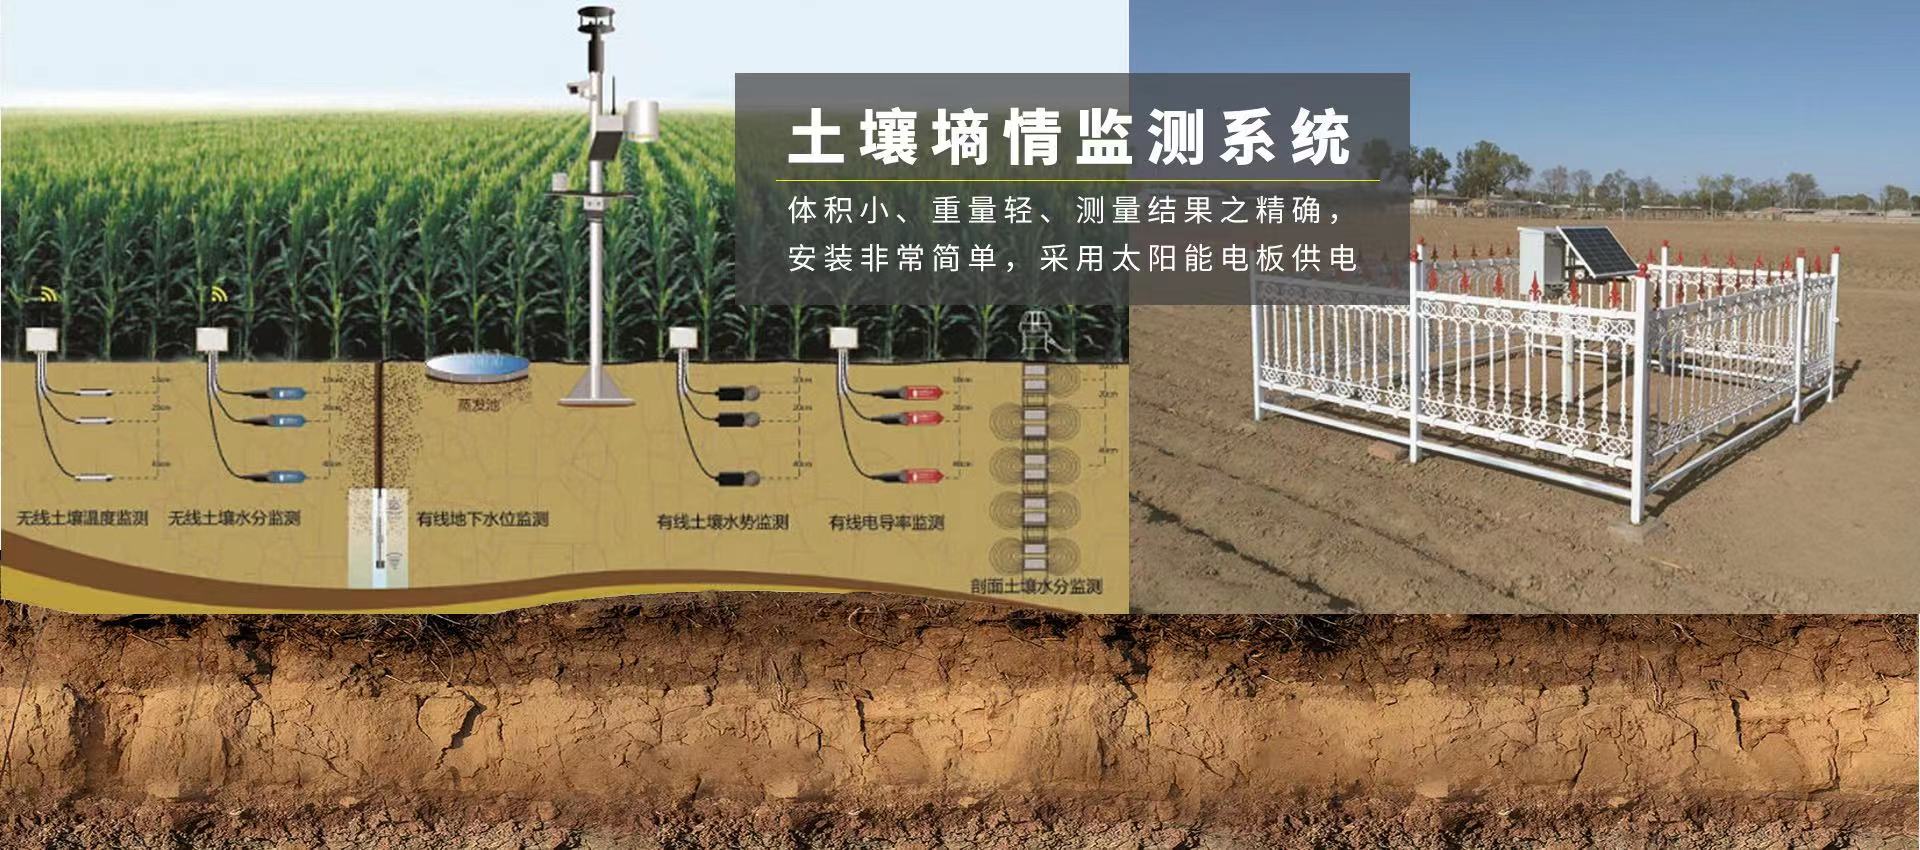 土壤墒情监测站系统 实时监测土壤墒情(图1)